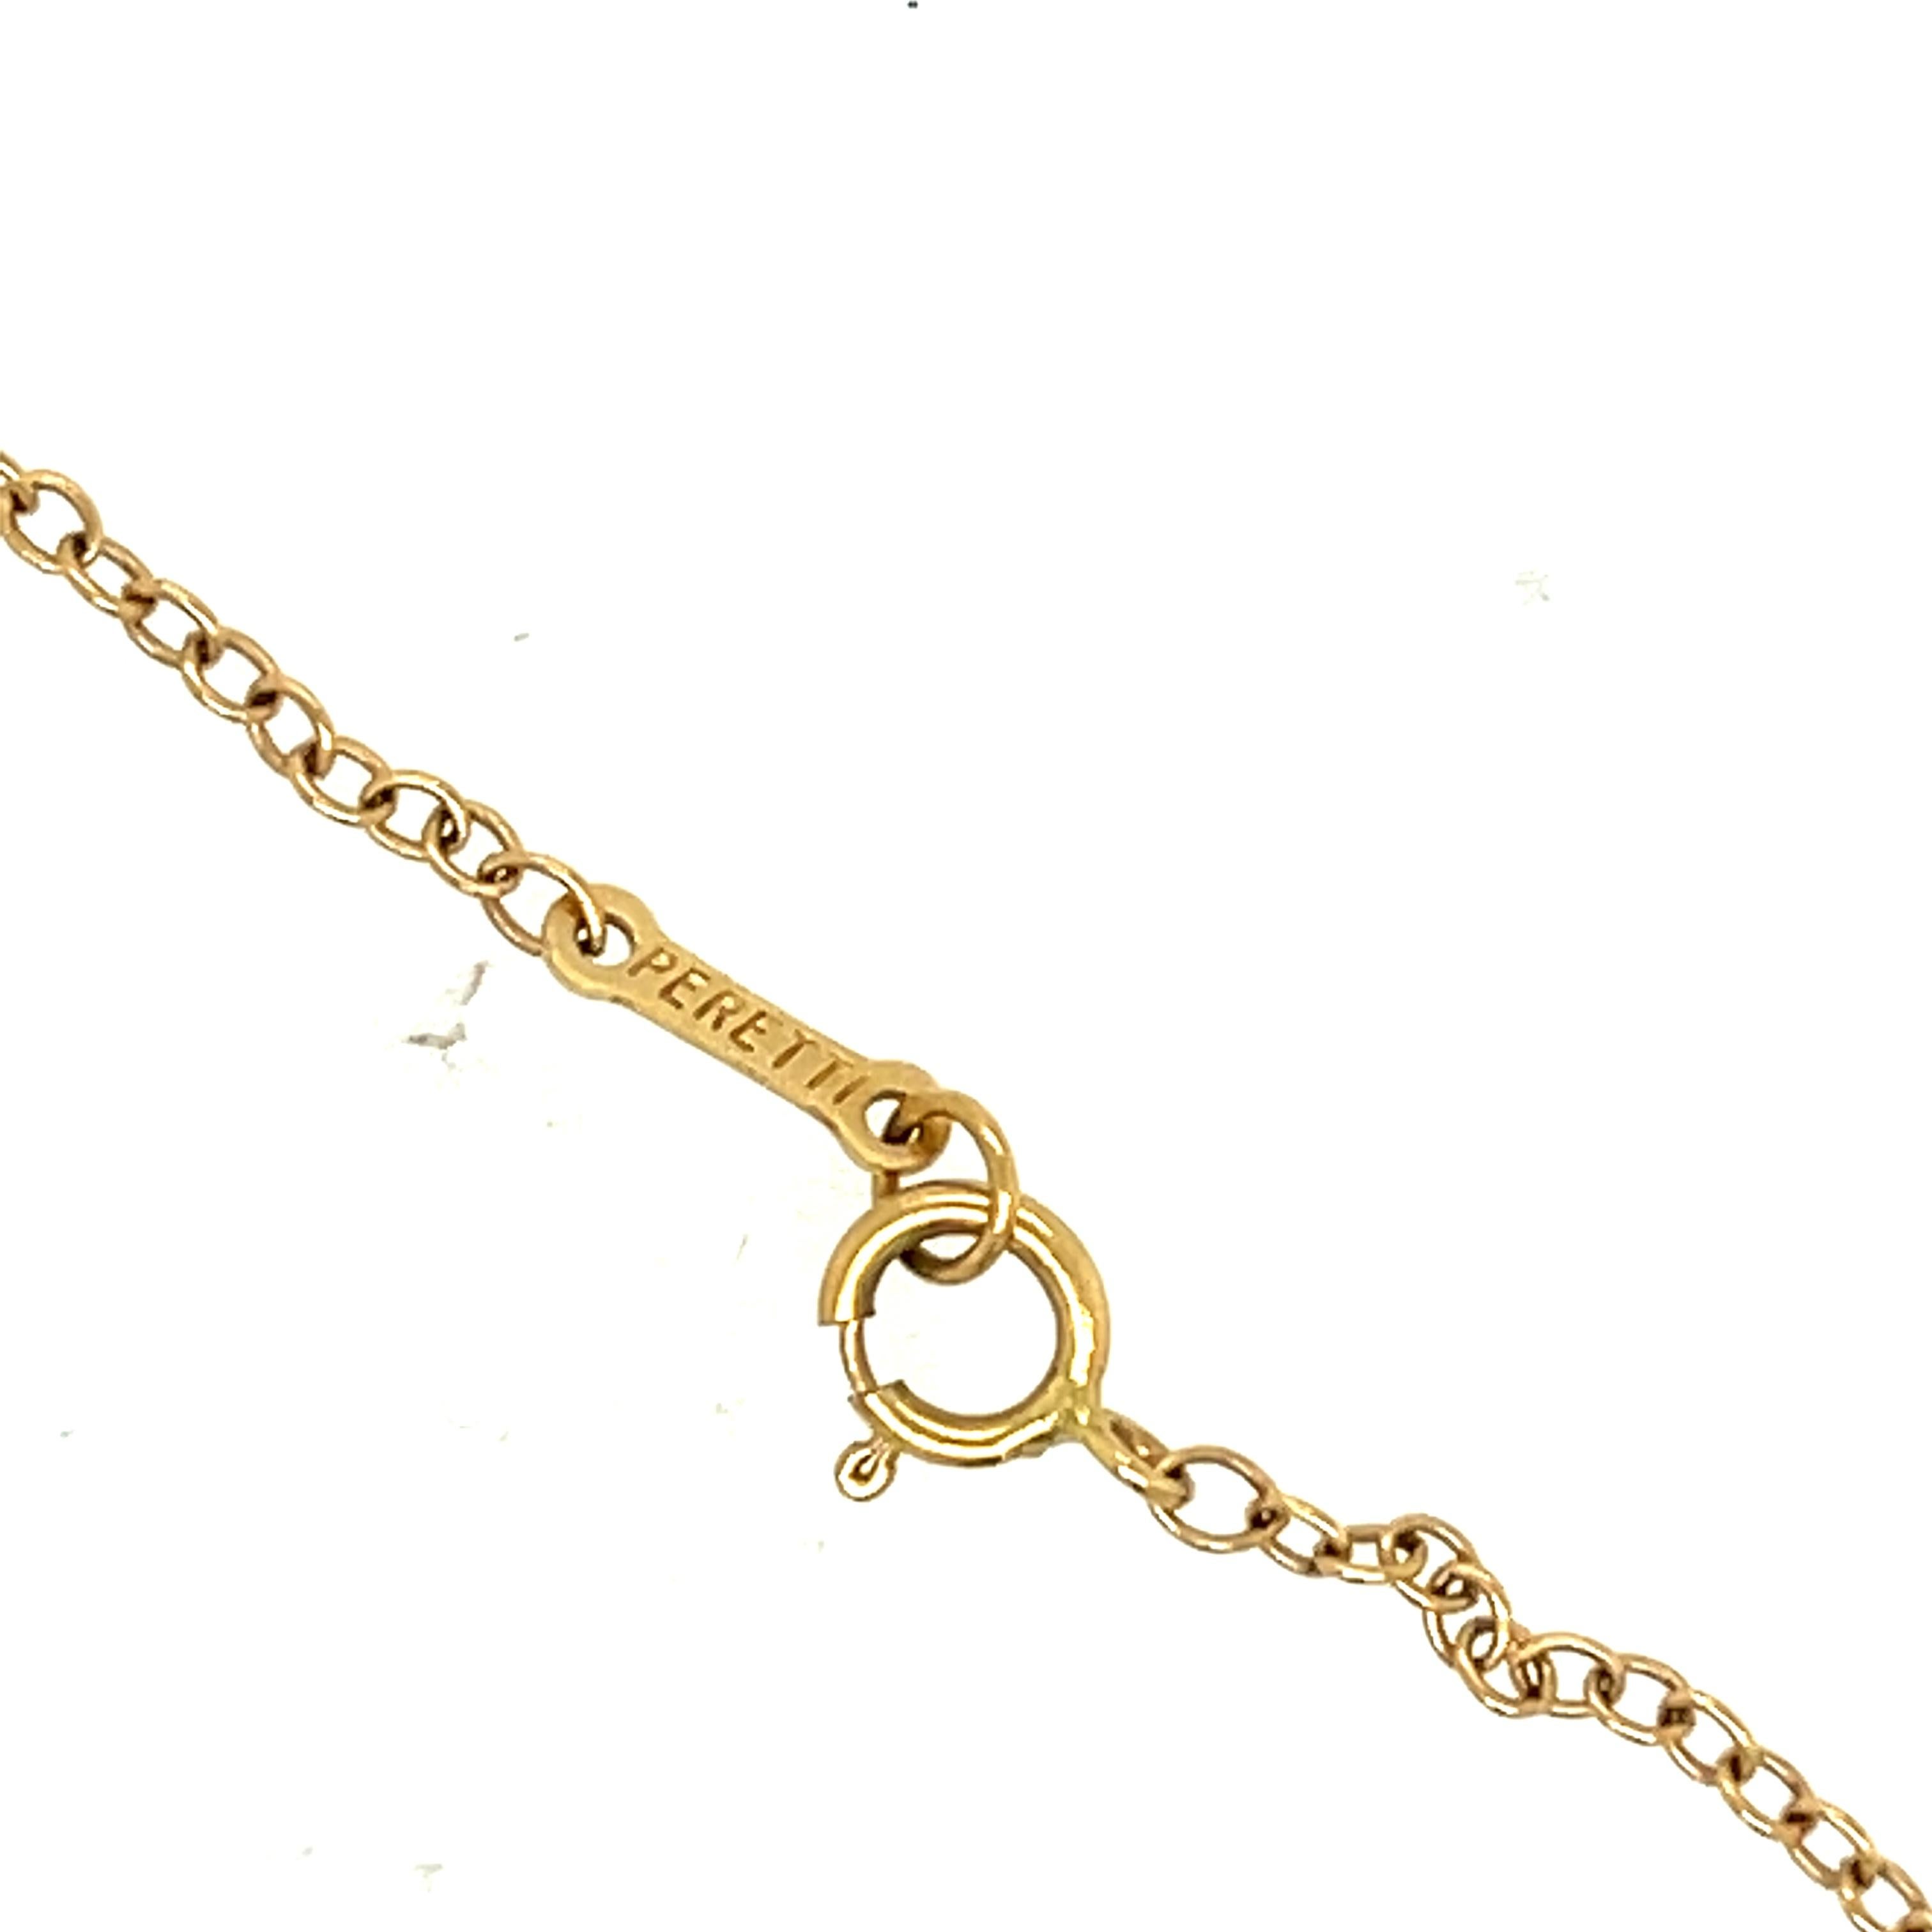 Brilliant Cut Modern Elsa Peretti Tiffany & Co. Open Heart Diamond Pendant Necklace